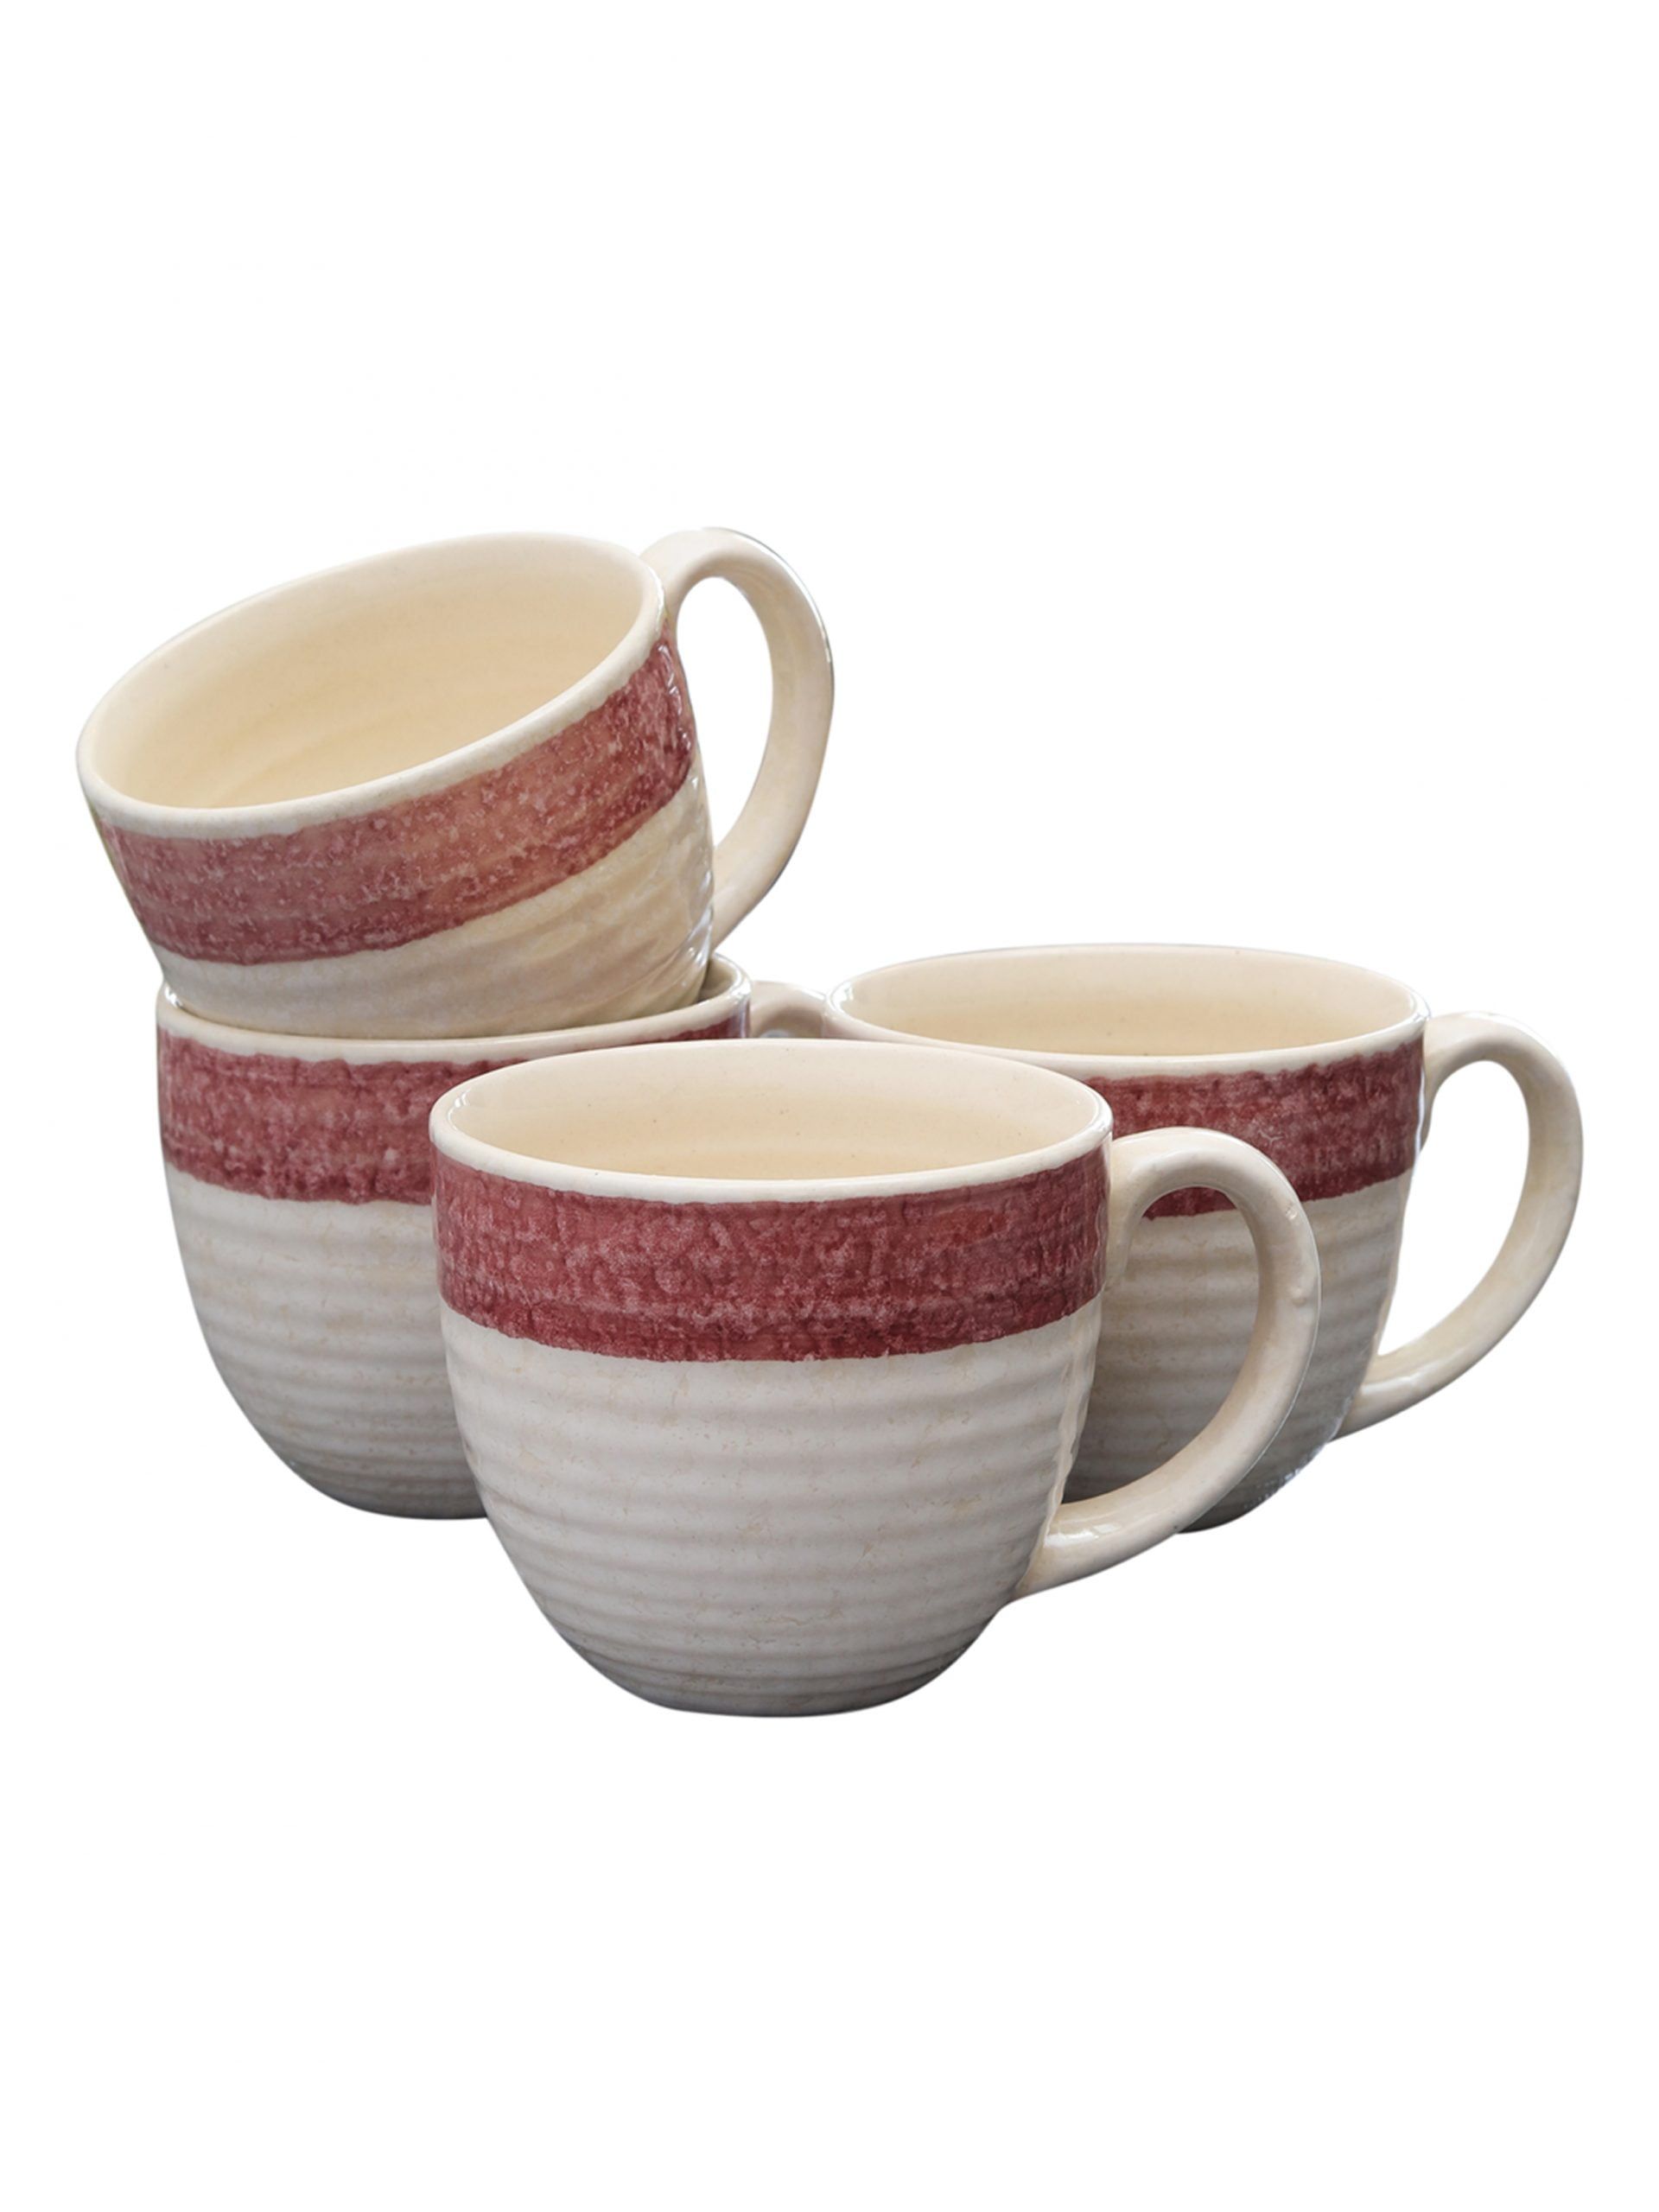 MIAH Decor Pottery Ceramic Glazed Coffee